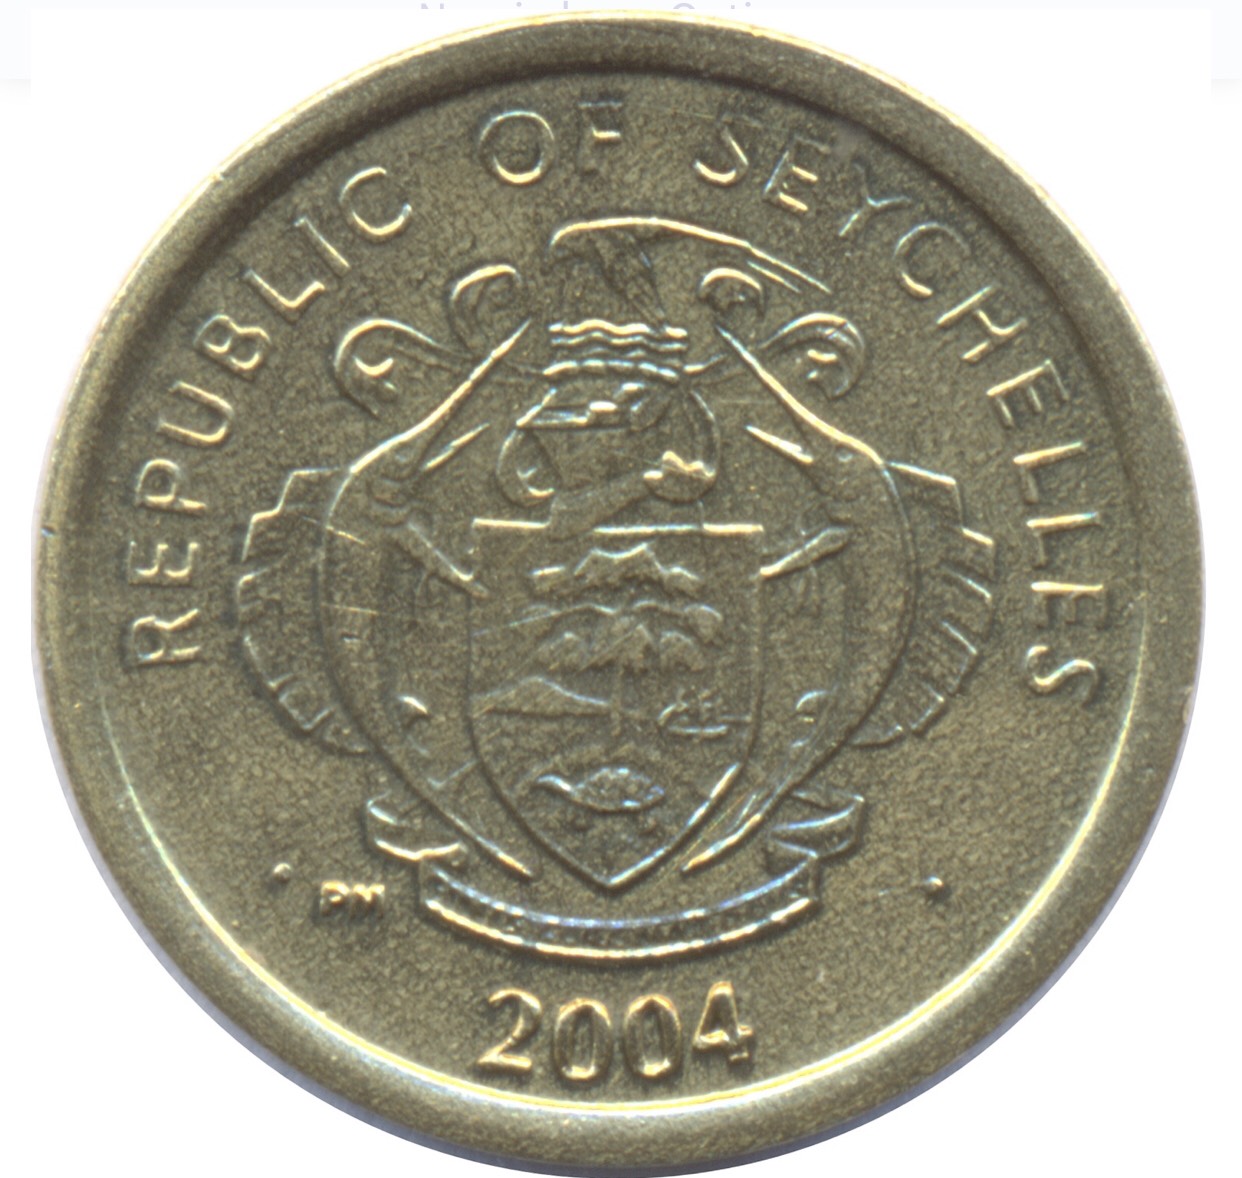 Đồng xu 1 cent con cua của Seychelles, quốc gia ở Đông Phi